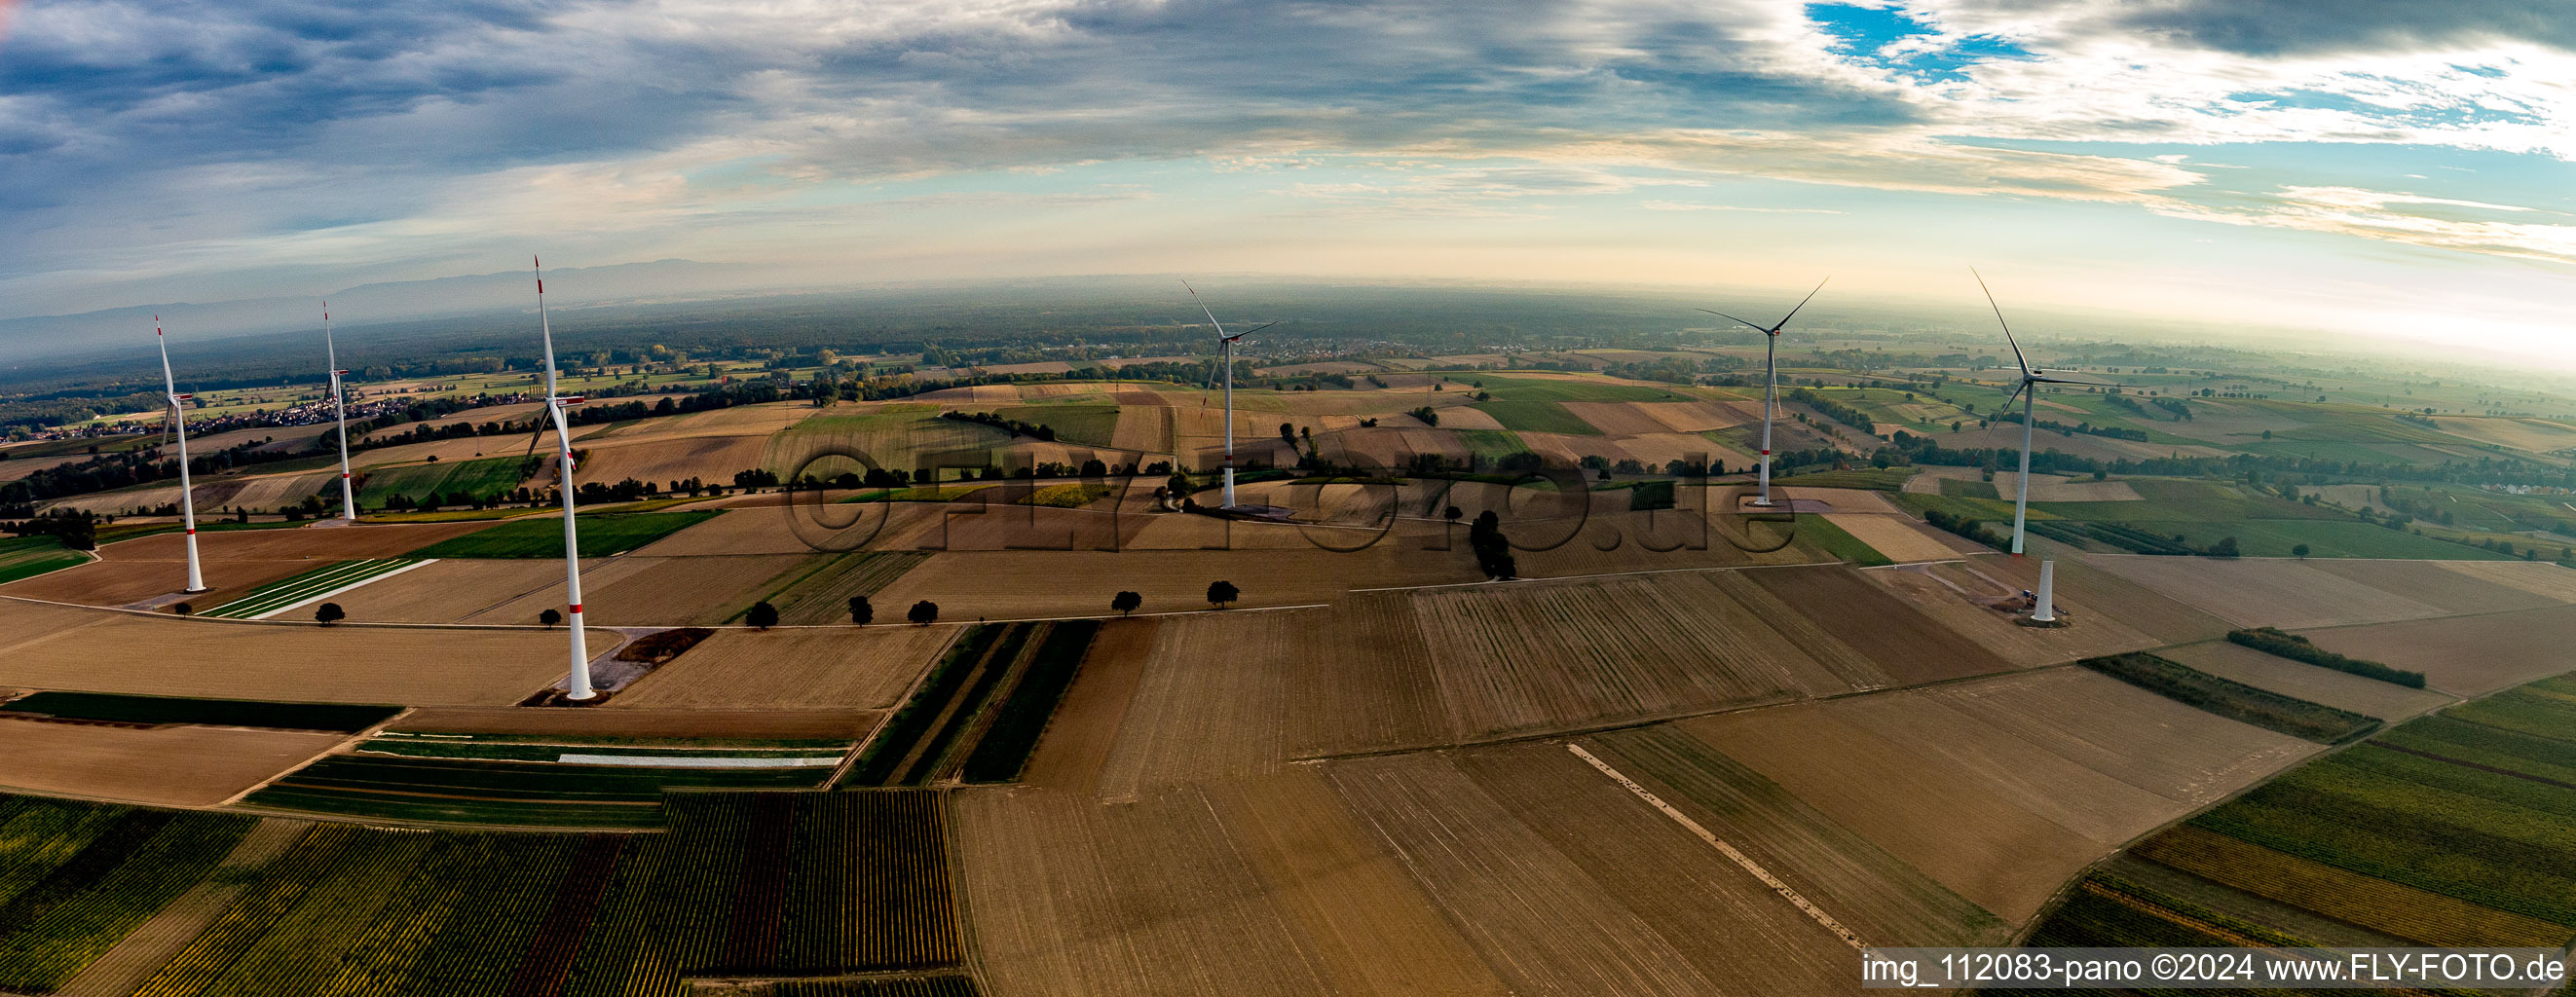 Windpark der EnBW - Windenergieanlage mit 6 Windrädern auf einem Feld in Freckenfeld im Bundesland Rheinland-Pfalz, Deutschland